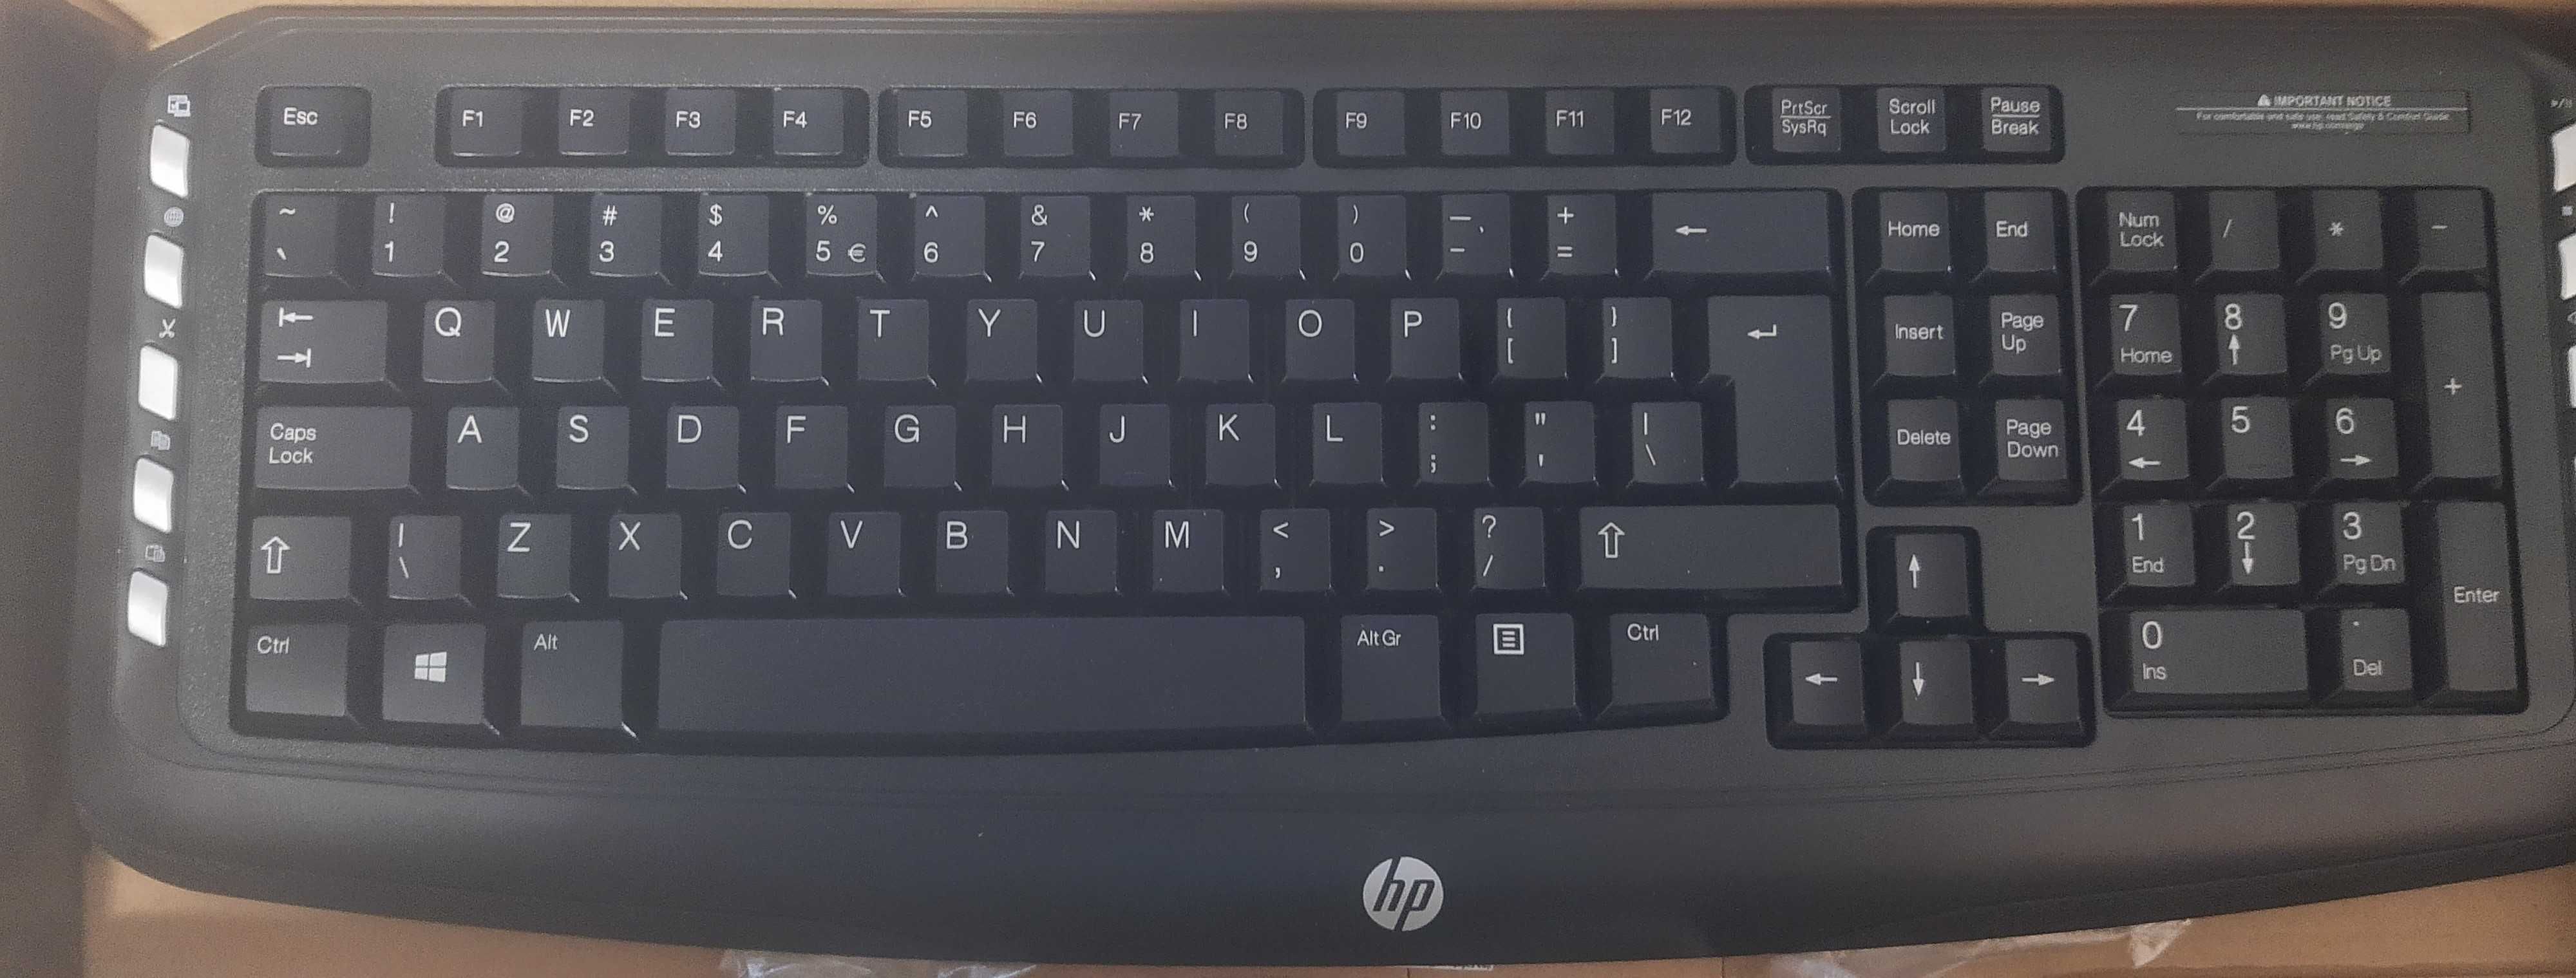 Zestaw bezprzewodowy klawiatura + mysz HP LV290AA jak nowy